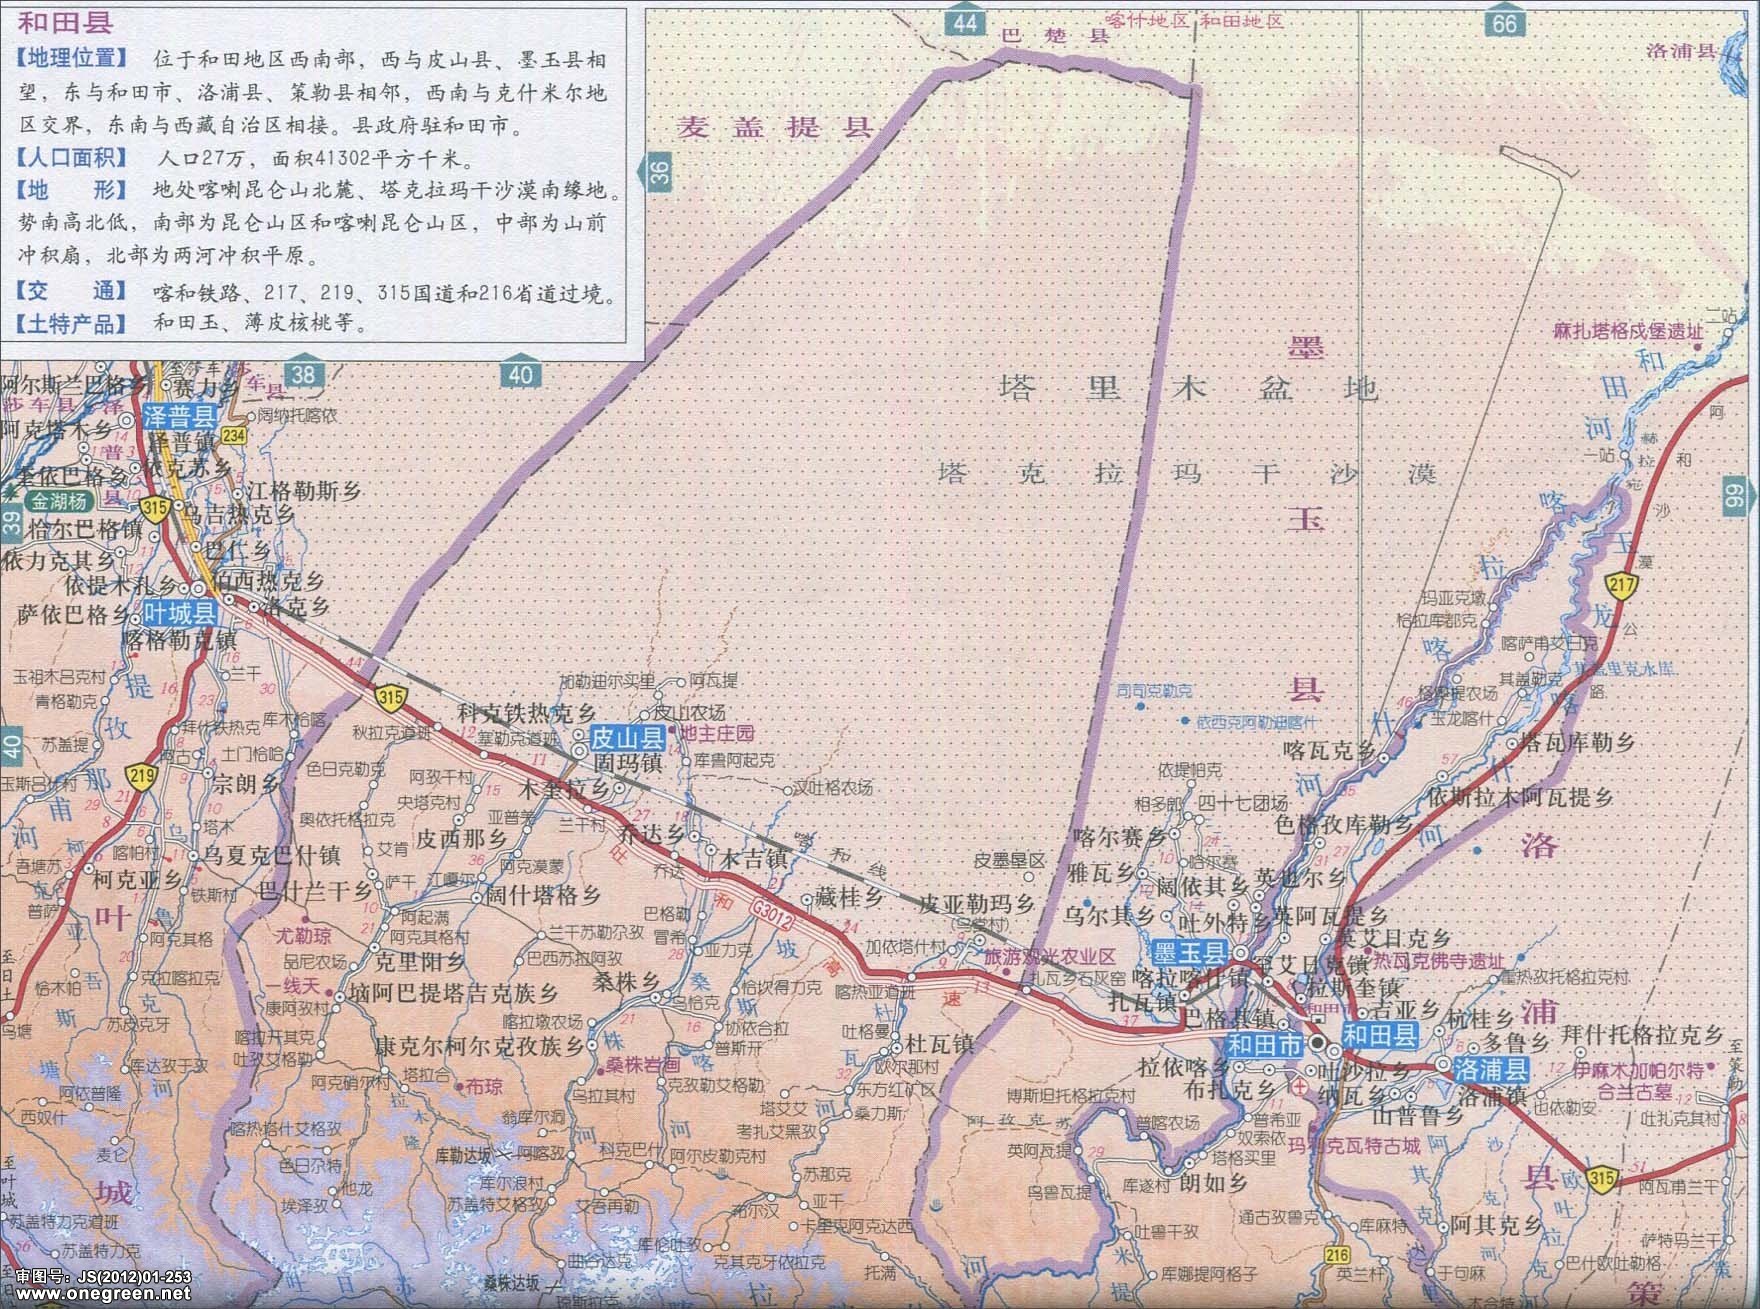 和田地区地图  | 和田 |  下一张地图: 墨玉县洛浦县策勒县地图图片